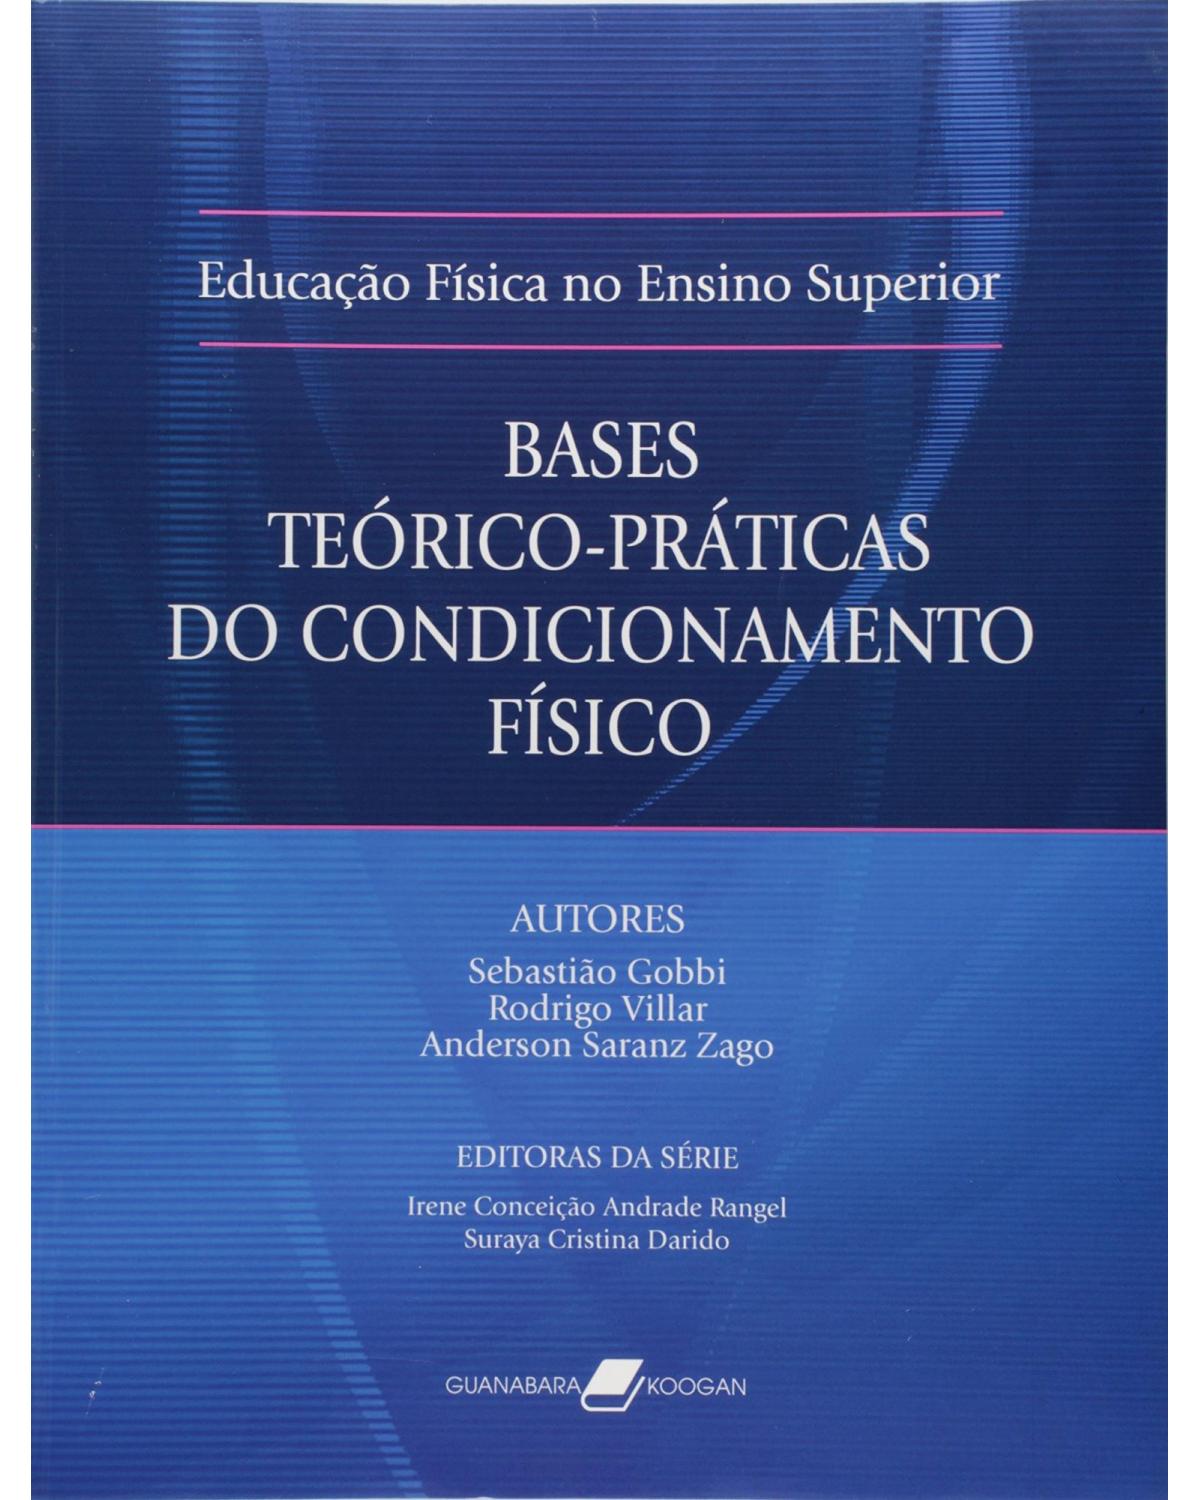 Bases teórico-práticas do condicionamento físico - 1ª Edição | 2005